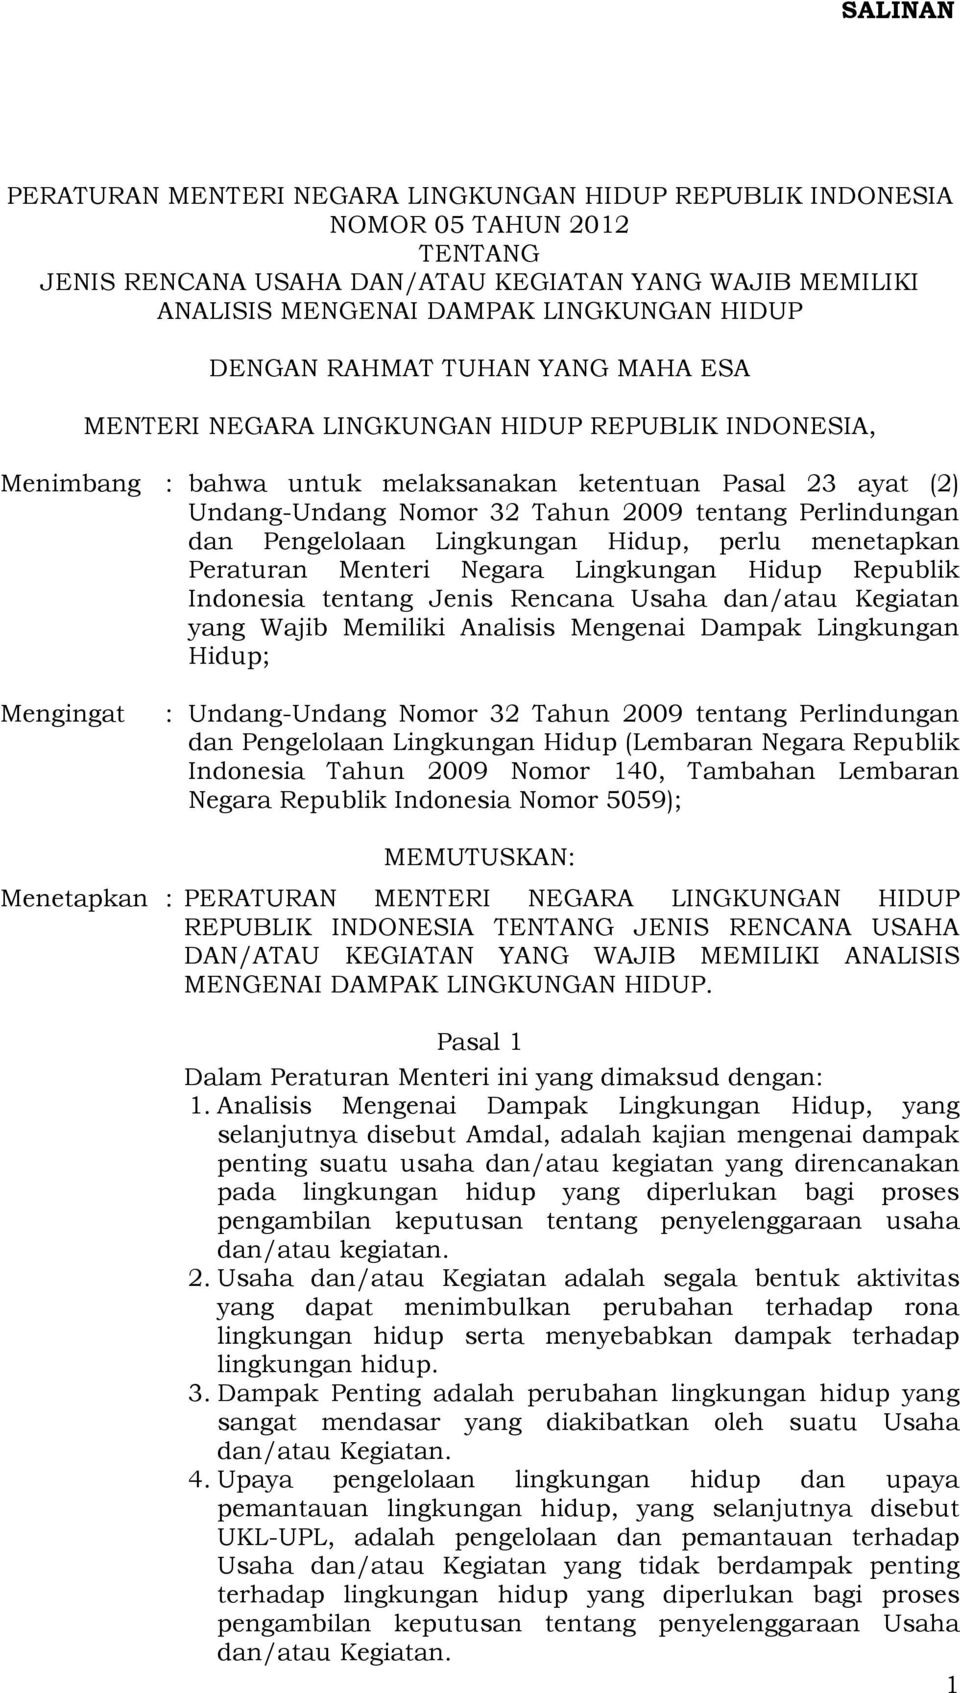 Perlindungan dan Pengelolaan Lingkungan Hidup, perlu menetapkan Peraturan Menteri Negara Lingkungan Hidup Republik Indonesia tentang Jenis Rencana Usaha dan/atau Kegiatan yang Wajib Memiliki Analisis